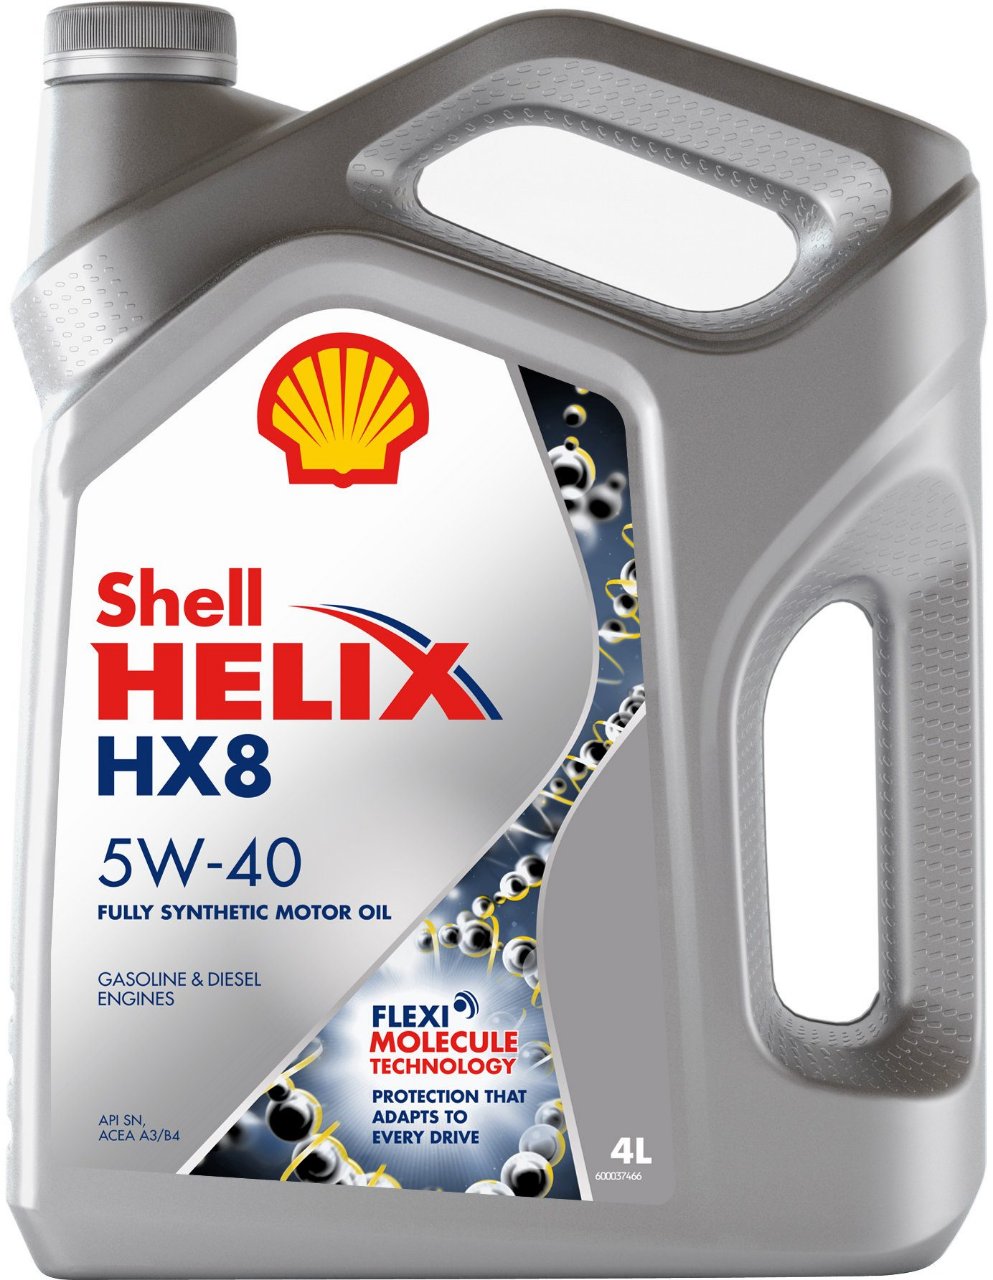 helix-hx8-syn-5w40-sn.jpeg